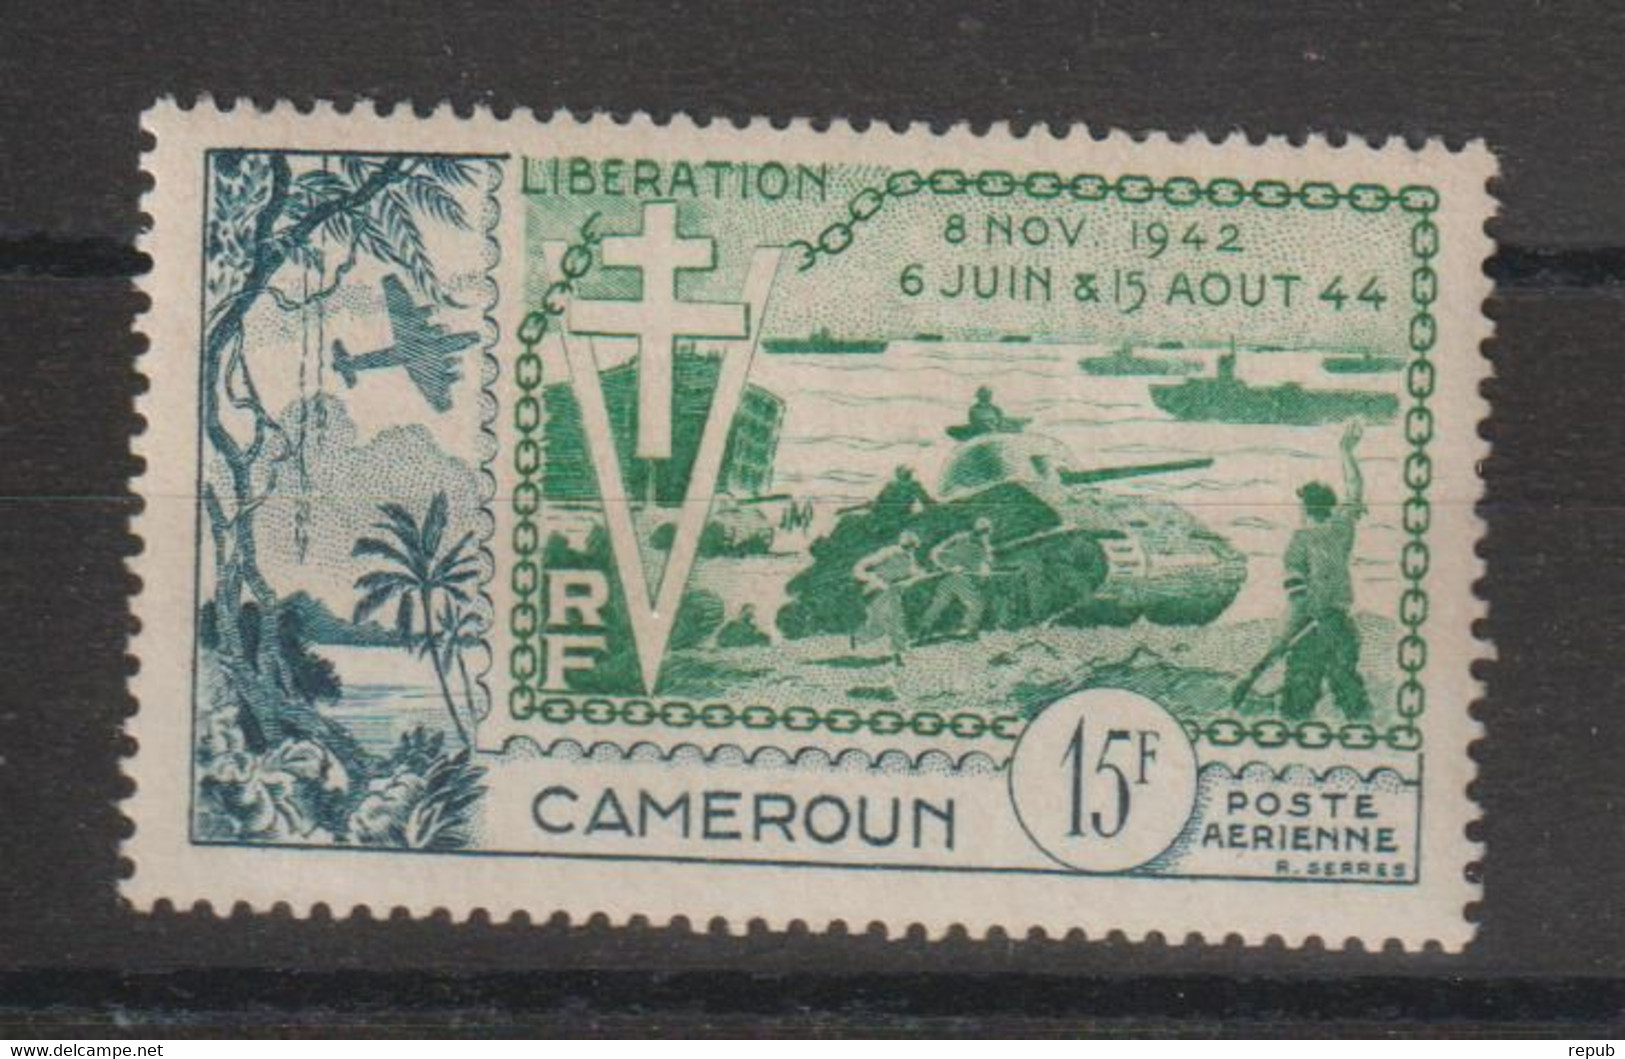 Cameroun 1954 Libération PA 44, 1 Val * Charnière MH - Poste Aérienne